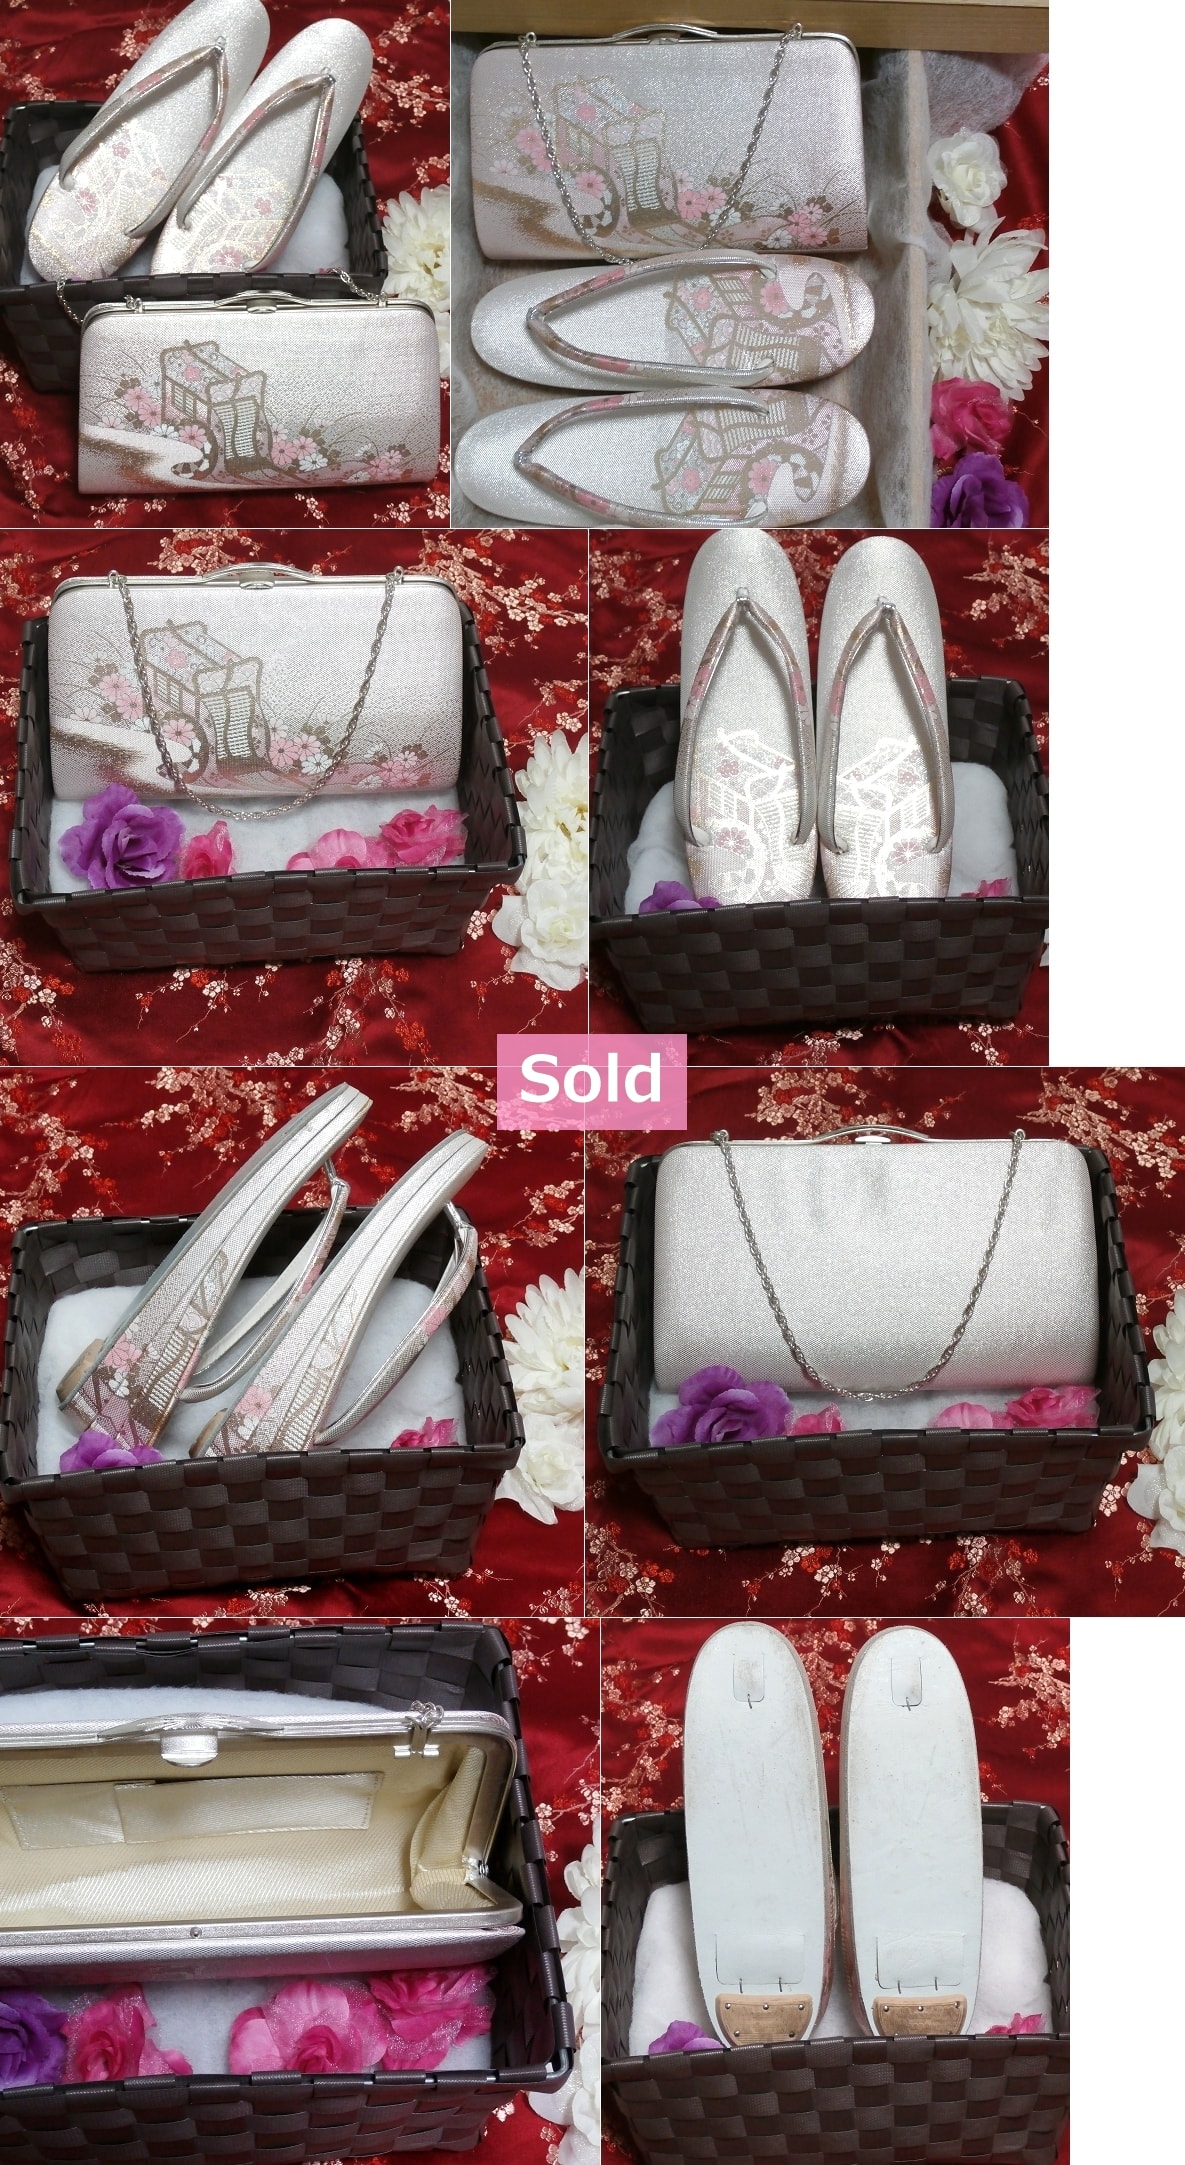 Sandalias de fondo grueso de color rosa cereza zapatos / bolsos / conjunto de 2 piezas de kimono japonés Sandalias de fondo grueso de color cereza rosa zapatos / bolsos / Conjunto de 2 piezas de kimono japonés